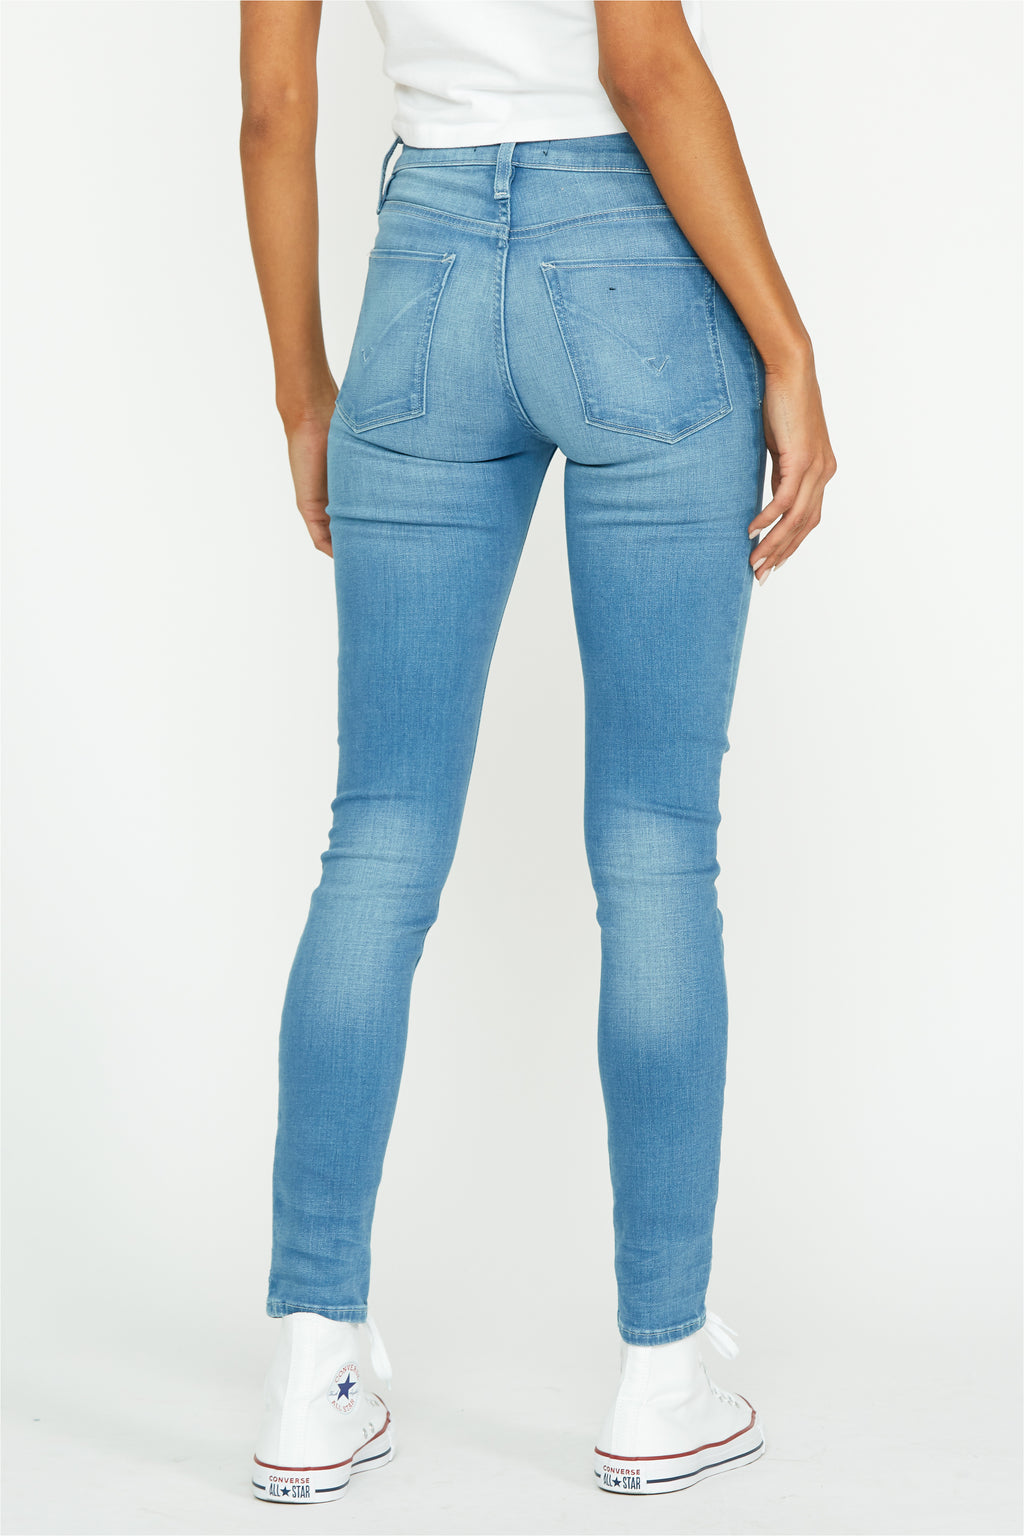 Women's Denim Skinny – Hudson Jeans